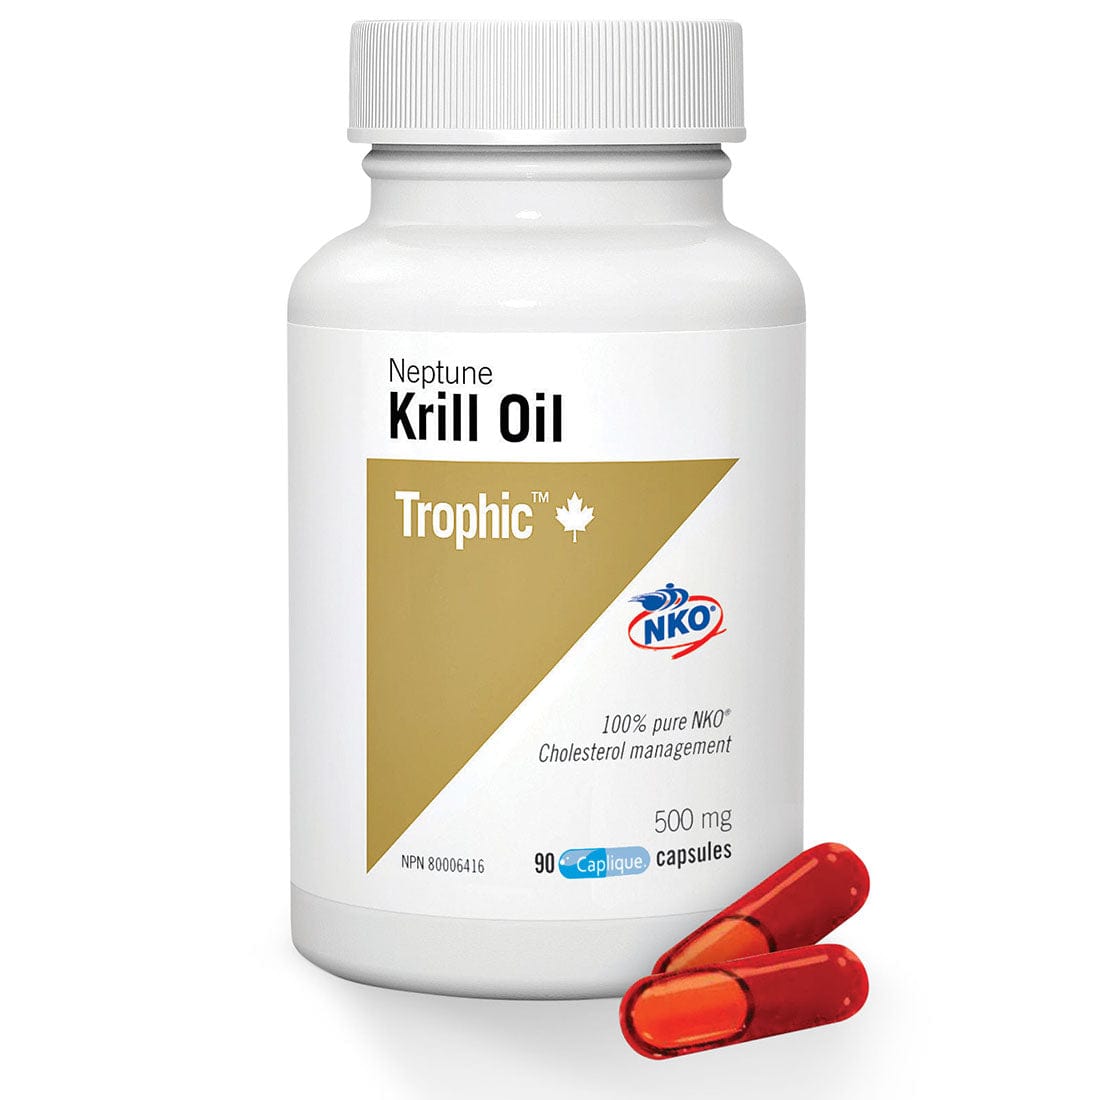 Trophic Neptune Krill Oil 500mg (100% Pure NKO)